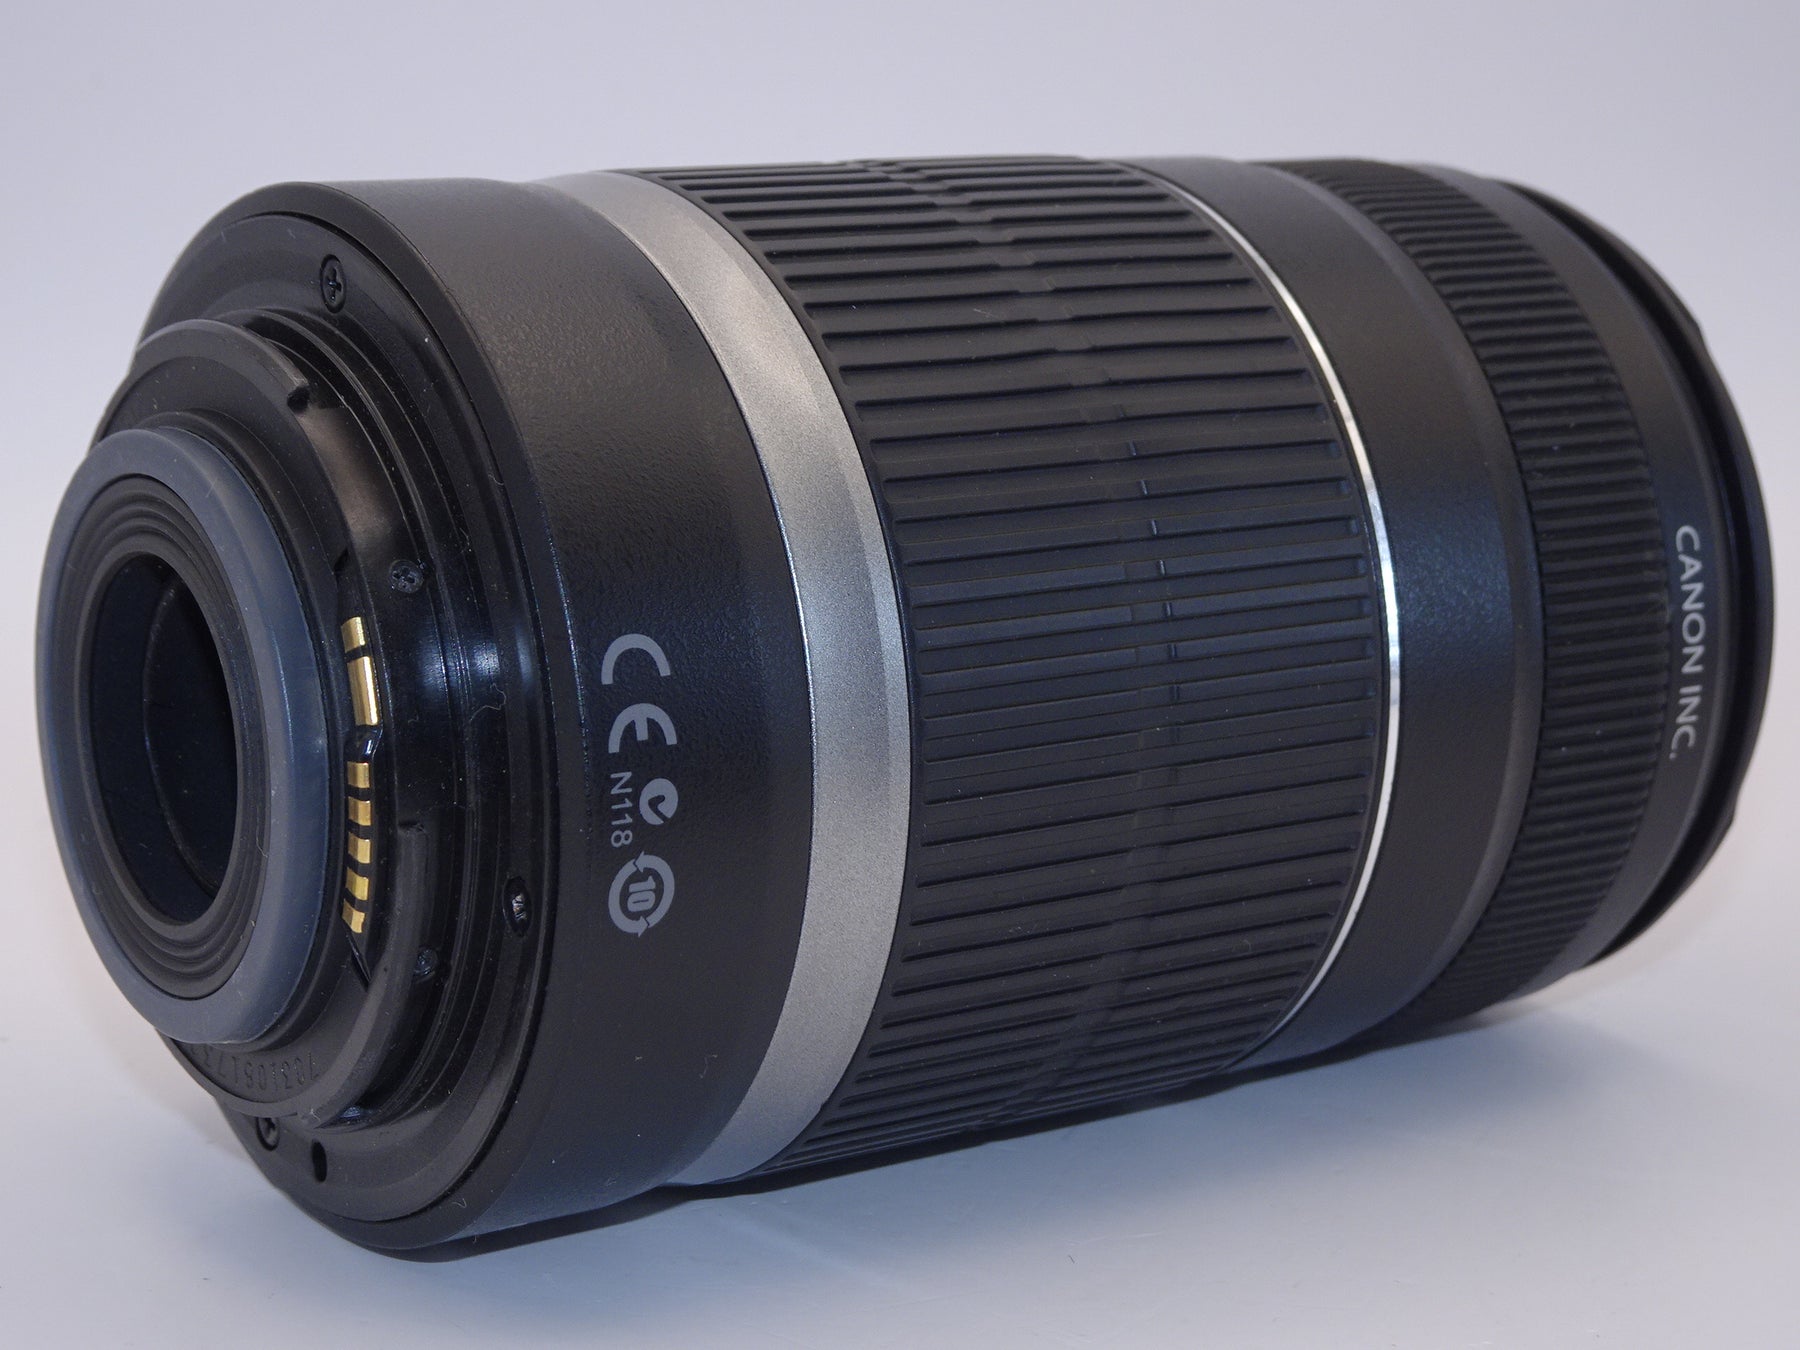 【外観並級】Canon 望遠レンズ EF-S55-250mm F4-5.6 IS APS-C対応